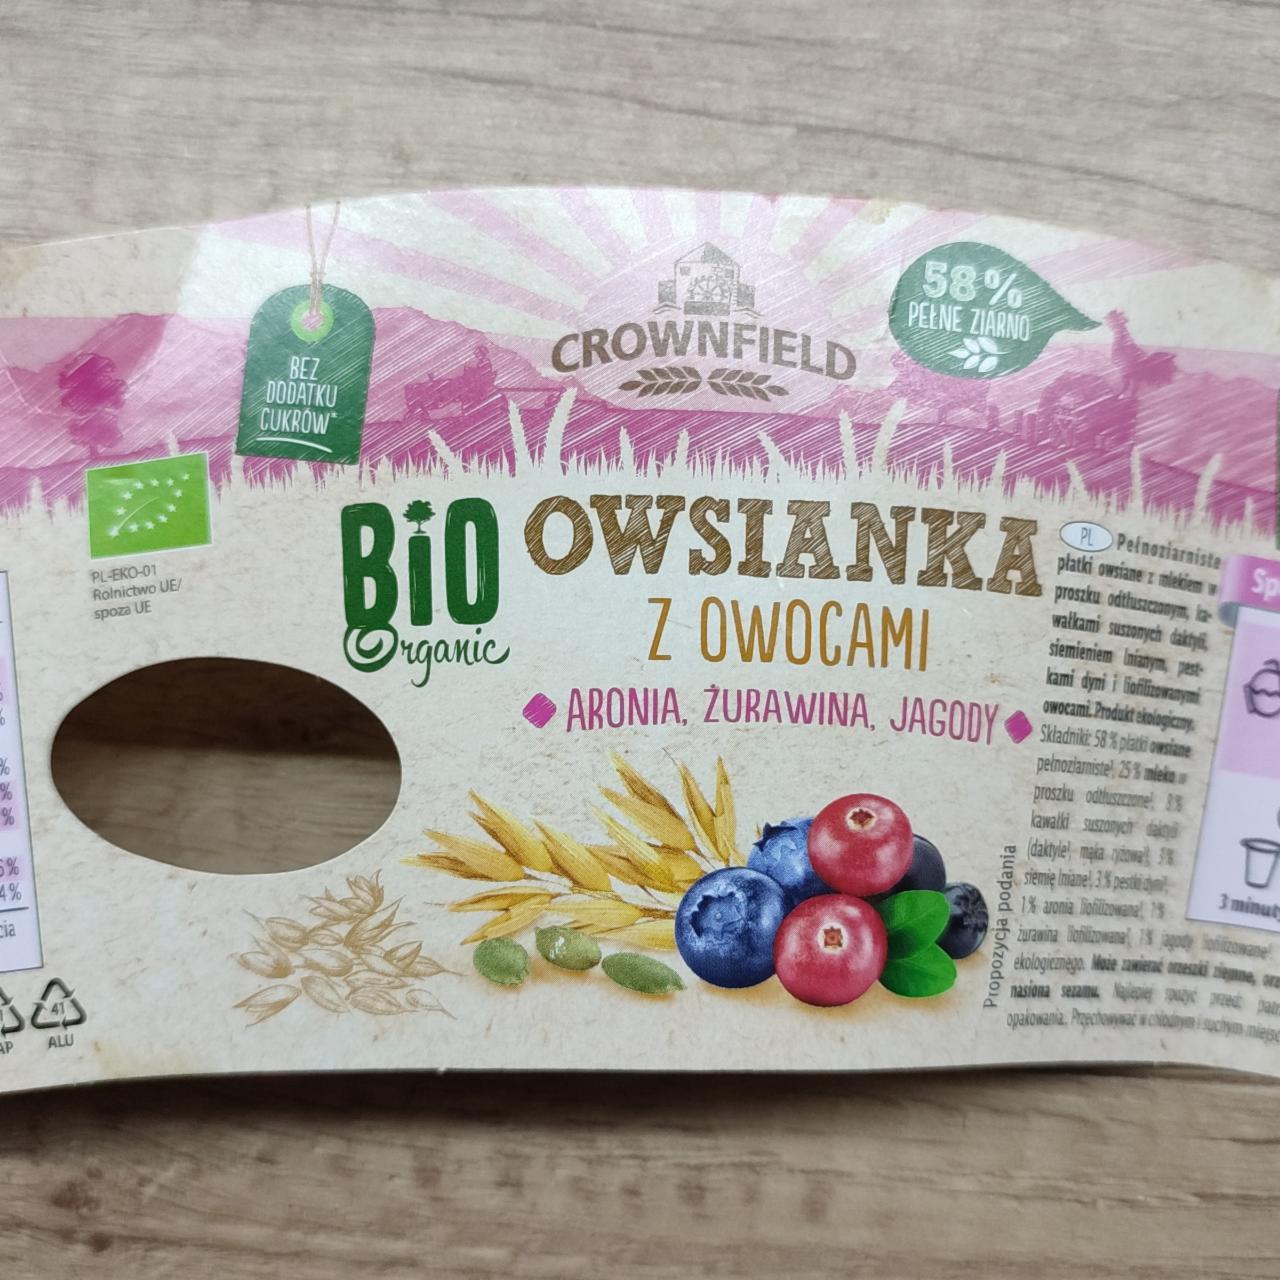 Fotografie - Bio Organic owsianka z owocami aronia, zurawina, jagody Crownfield